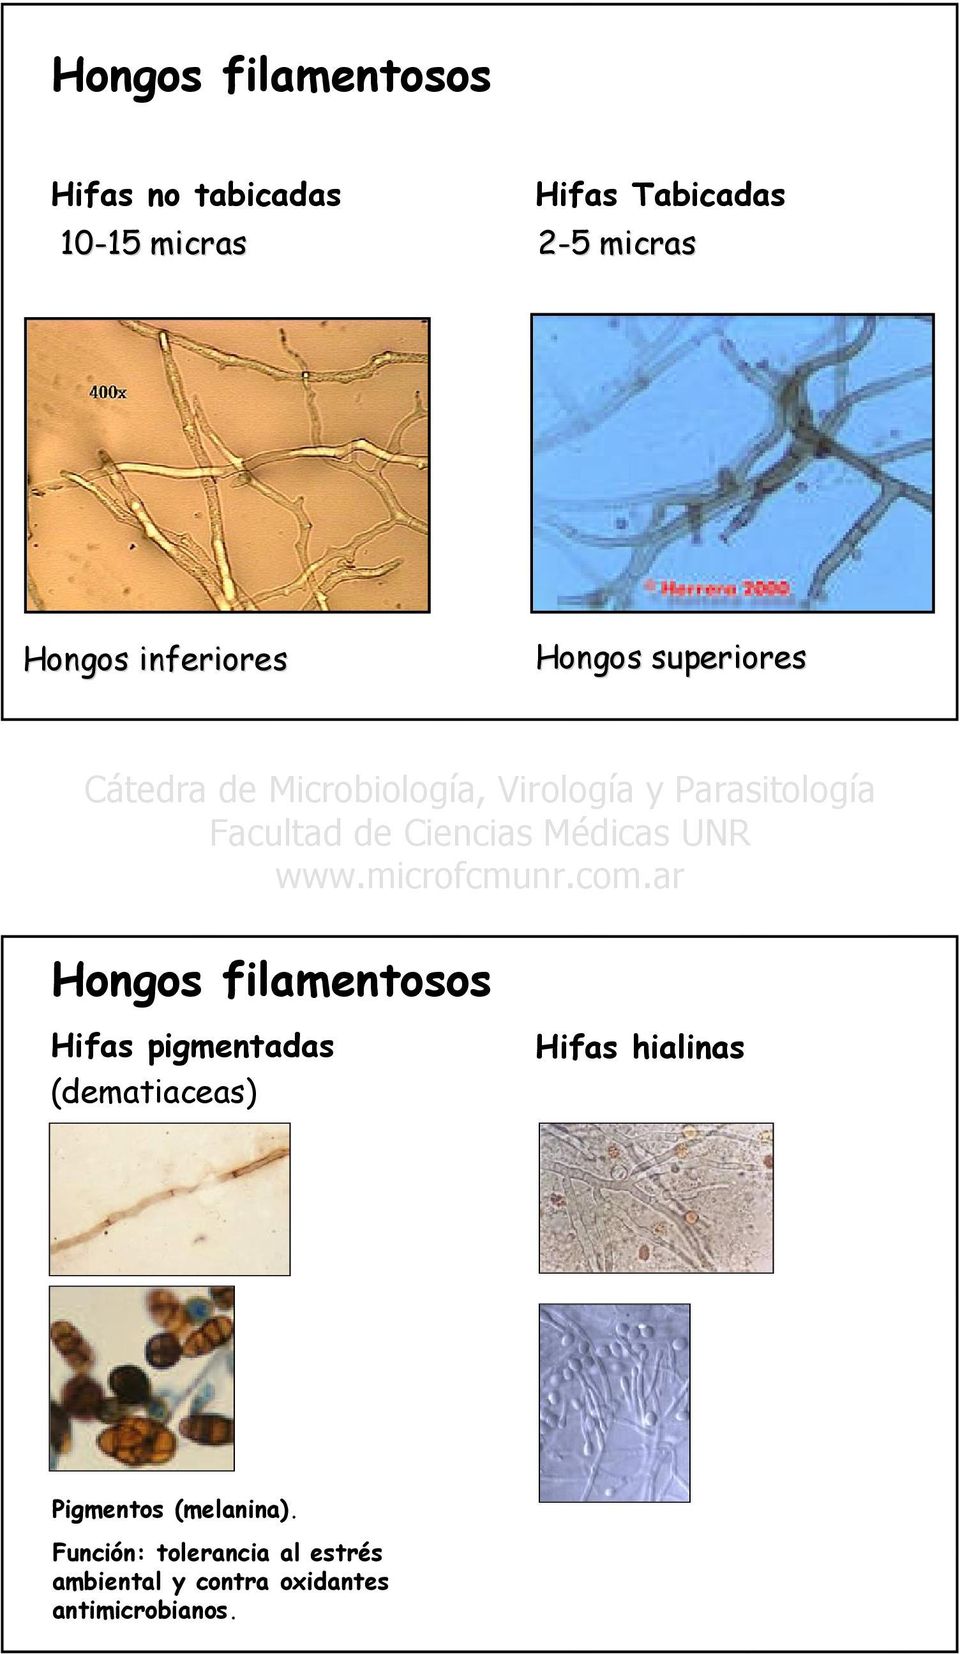 Hifas pigmentadas (dematiaceas) Hifas hialinas Pigmentos (melanina).